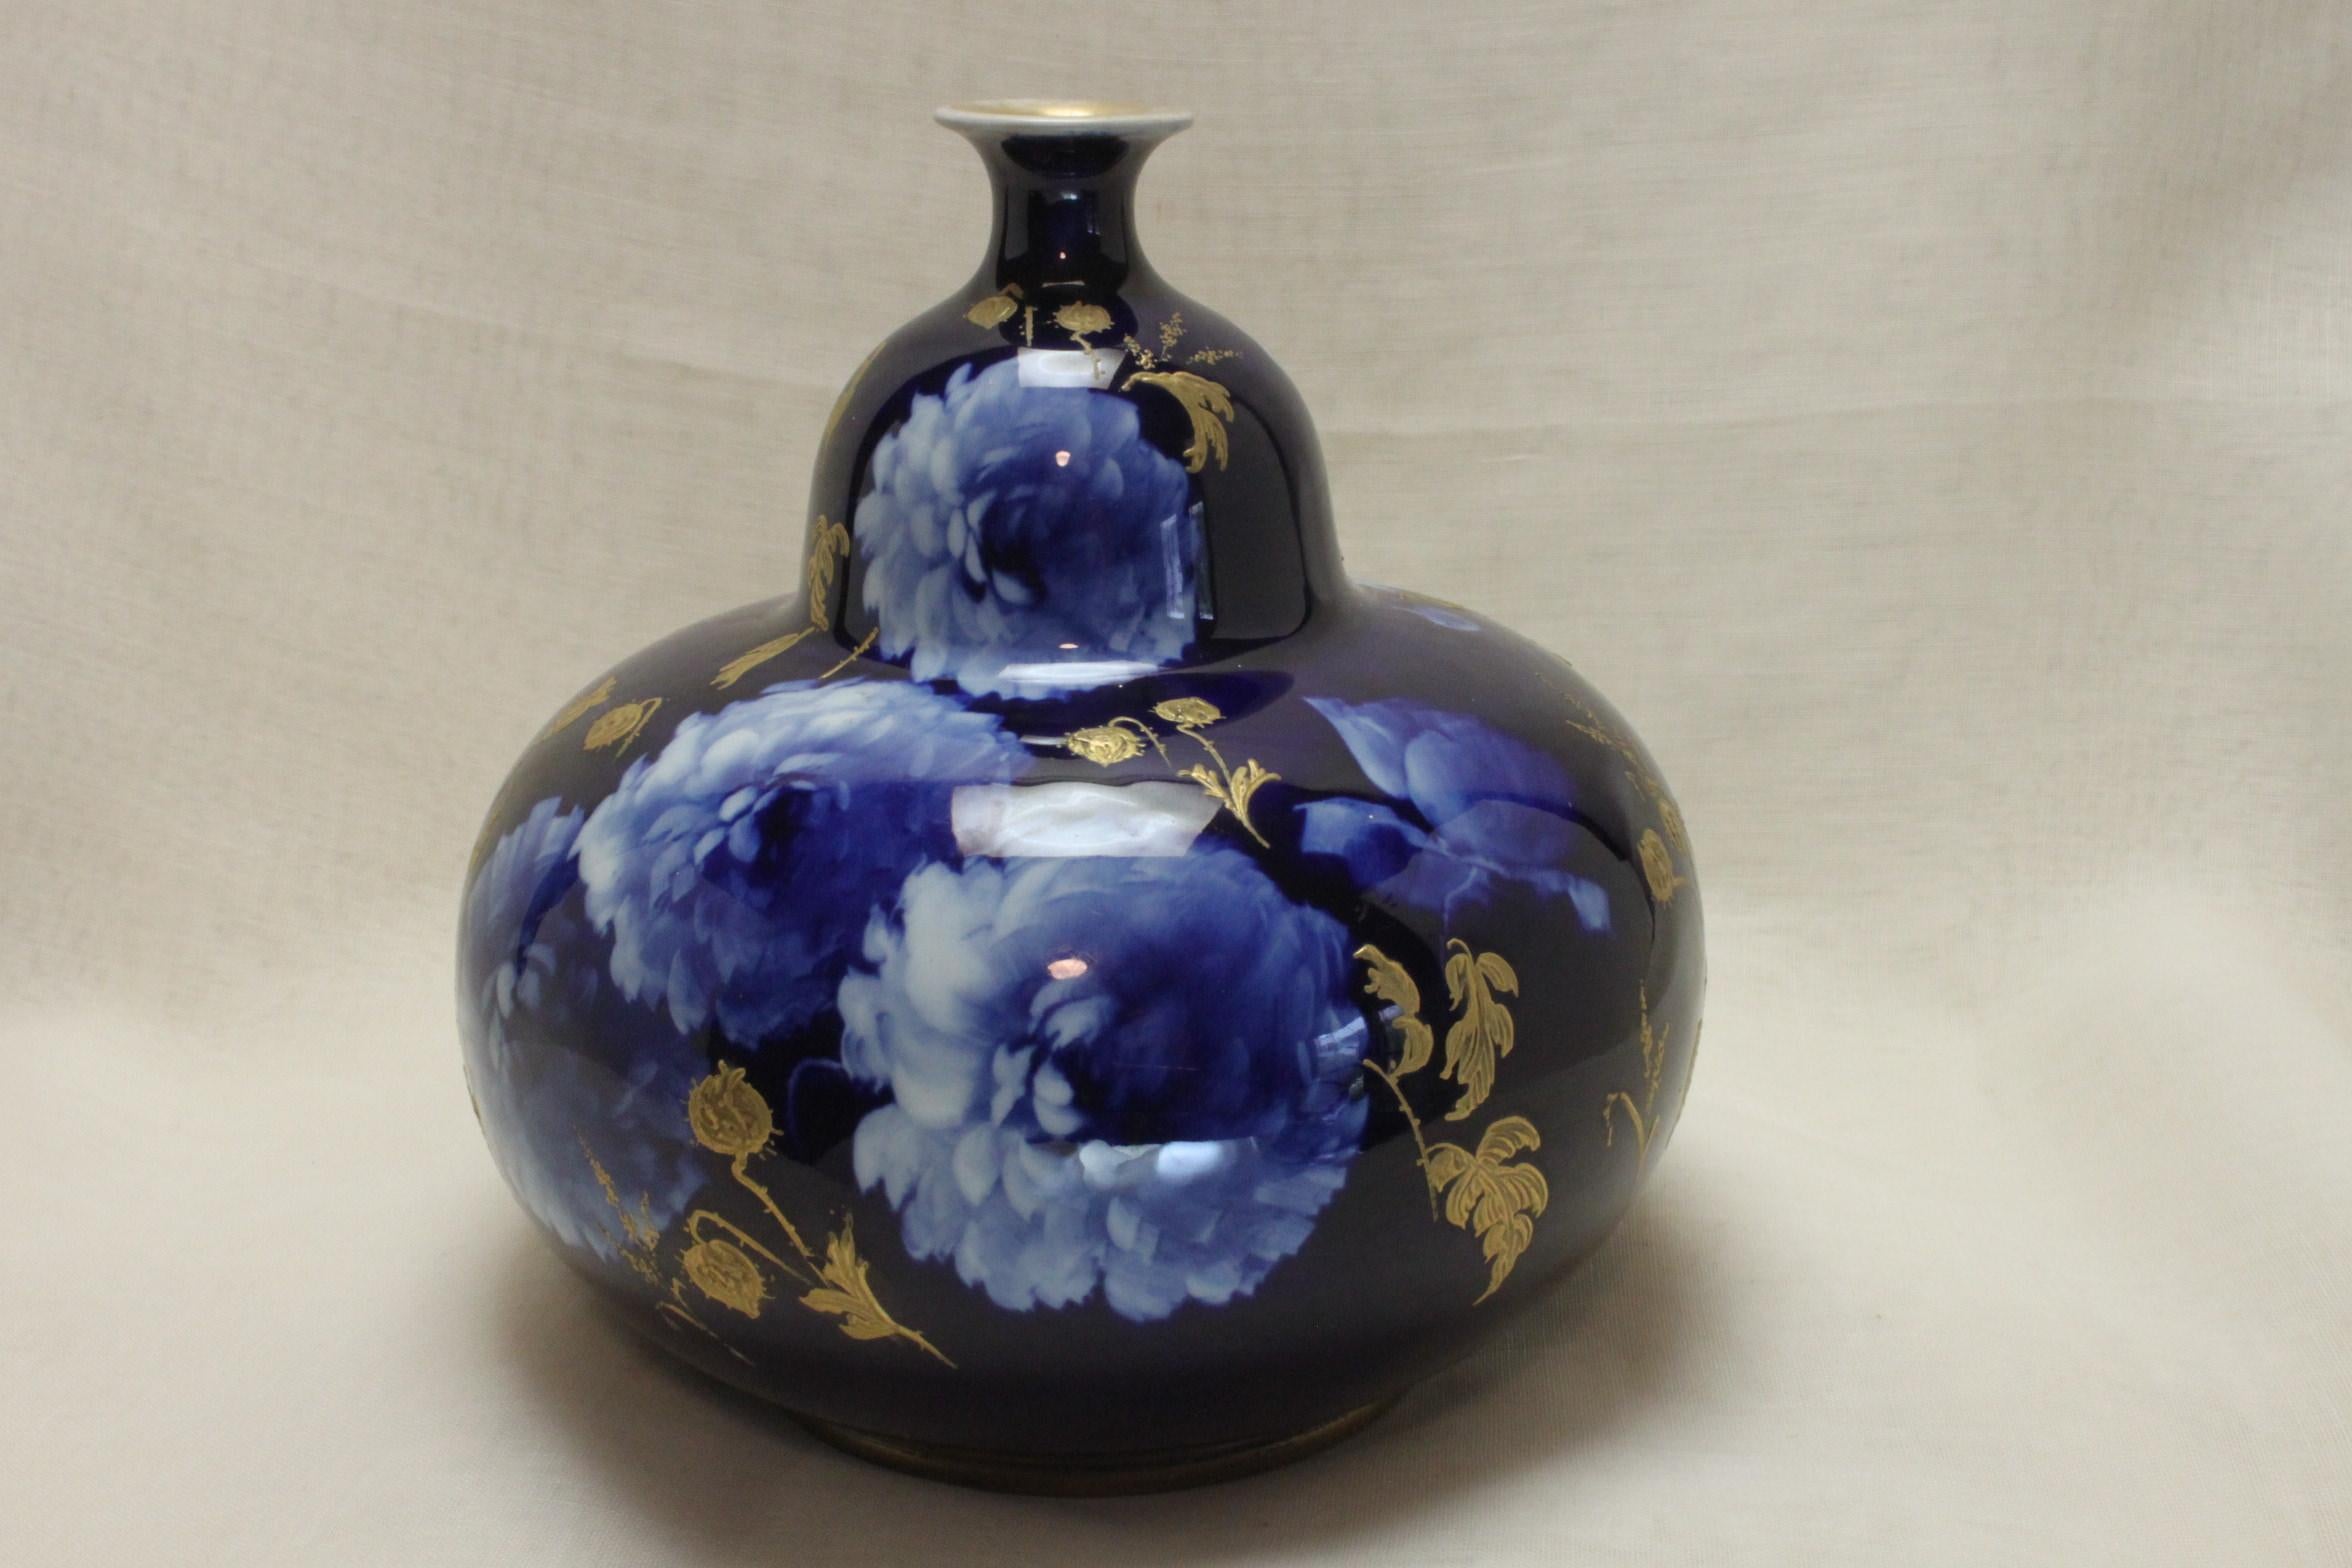 Diese kürbisförmige Vase stammt aus der Corolian-Ware-Linie von Doulton Burslem, die von 1891-1902 hergestellt wurde und aus dem Atelier von Robert Allen, einem sehr talentierten Designer und Maler, stammt. Das Dekor wurde mit der Sgraffito-Methode